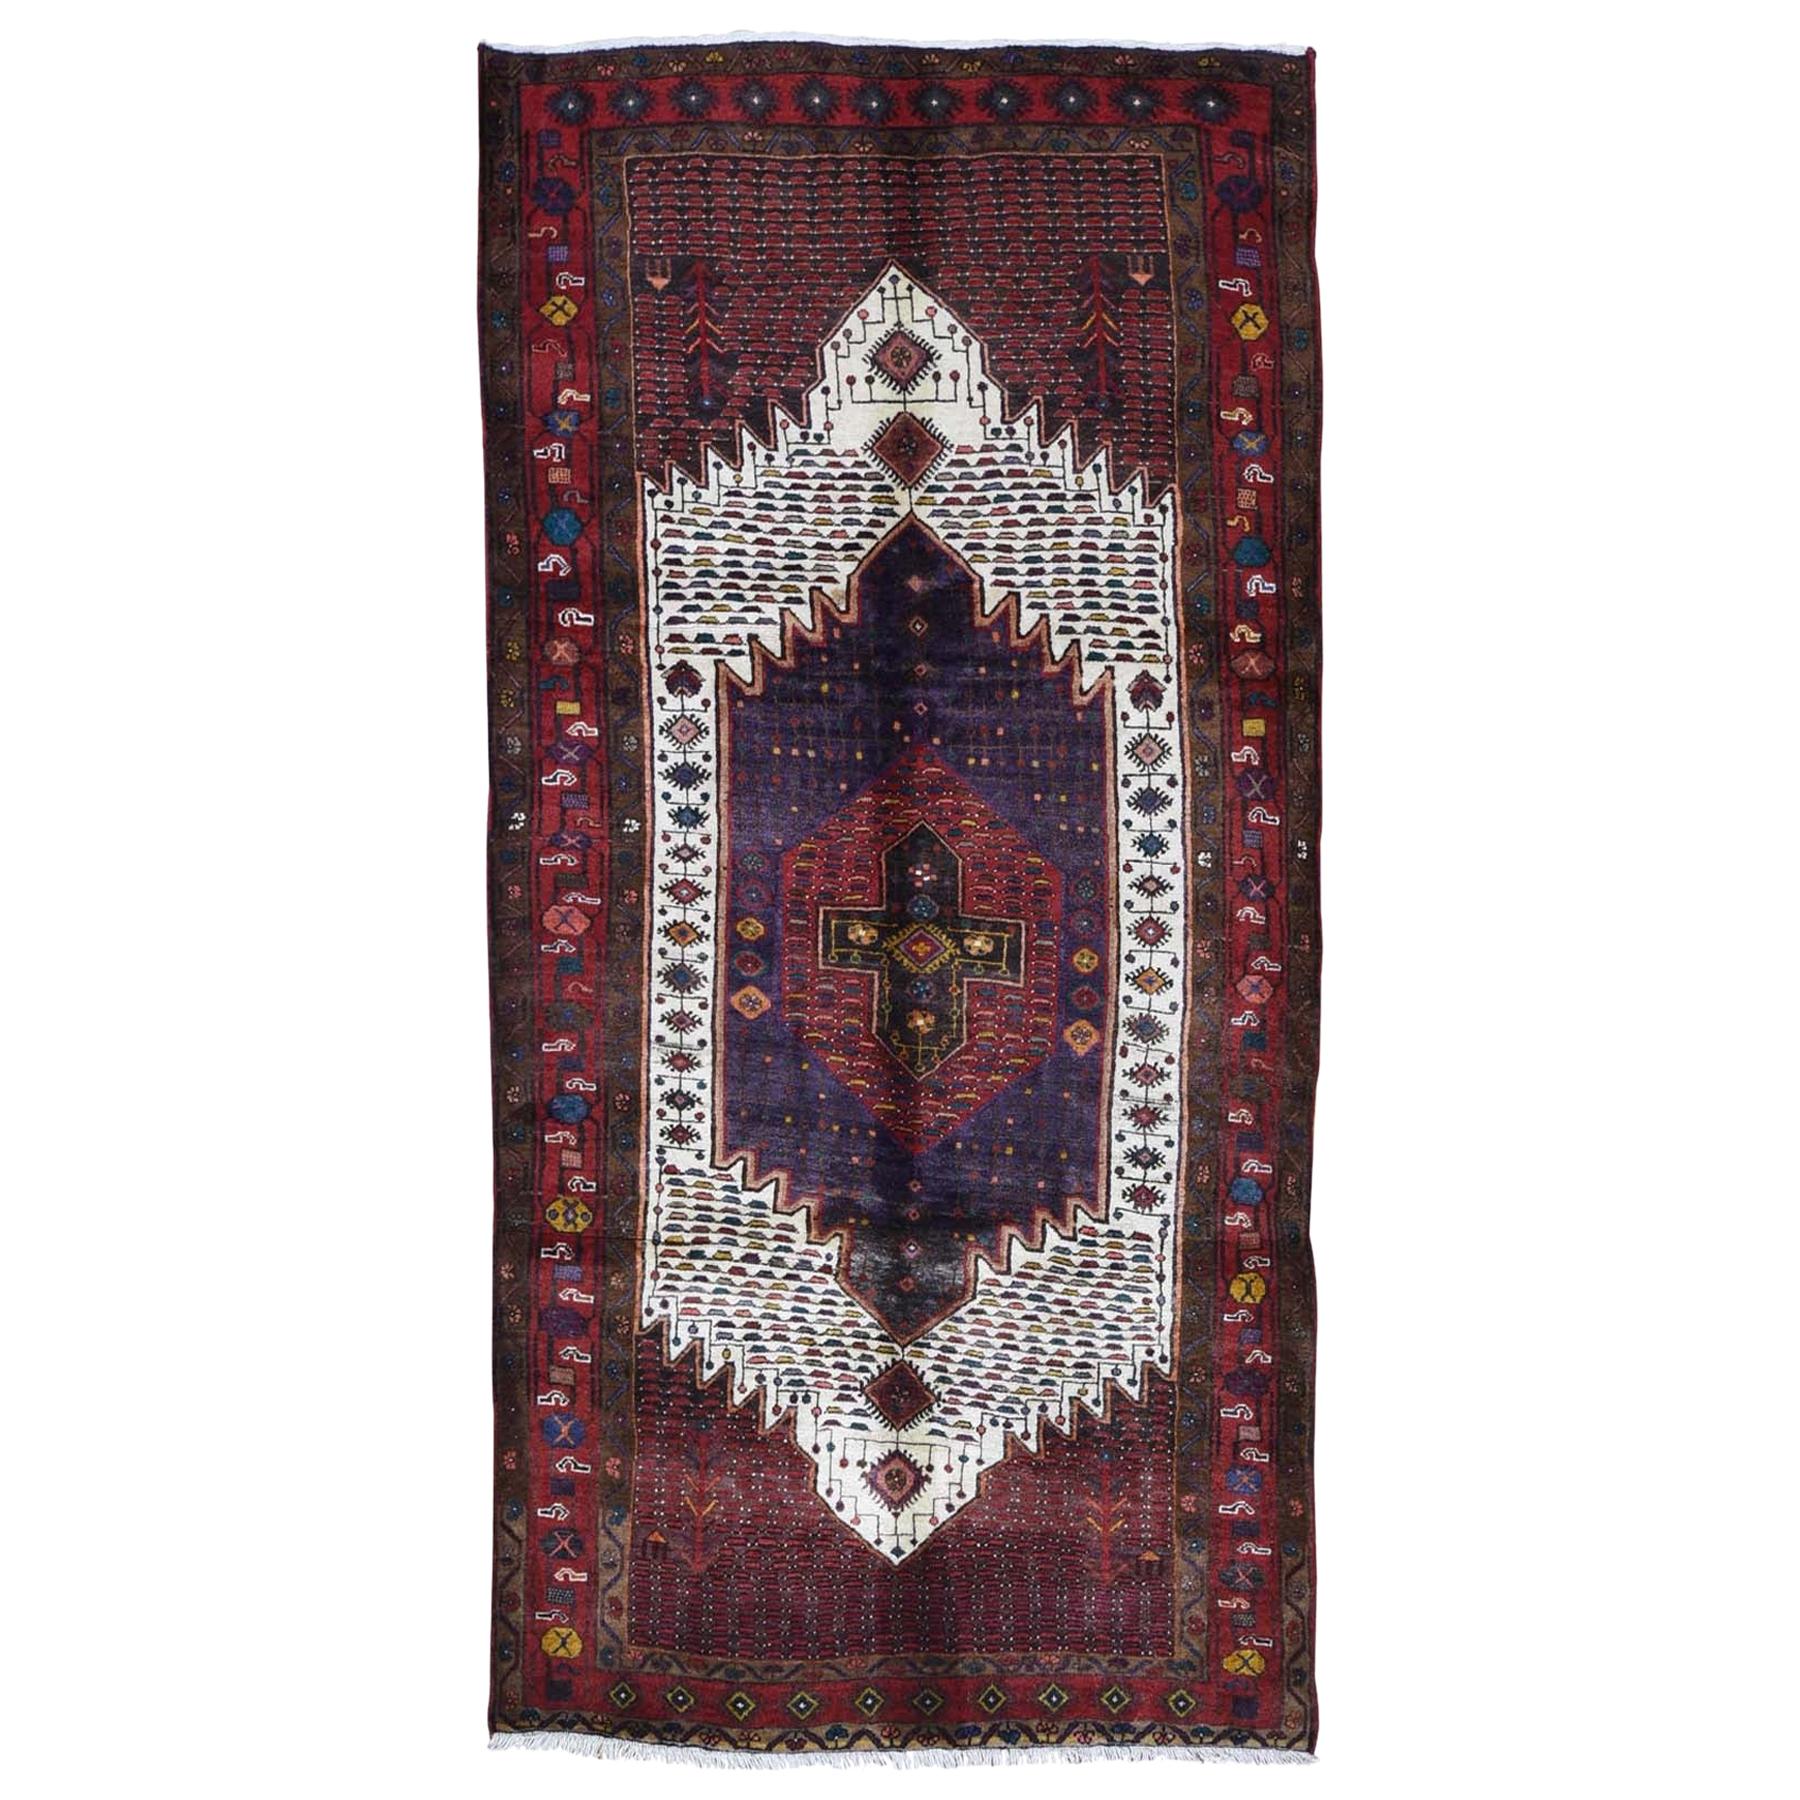 Roter persischer Hamadan-Teppich aus Wolle, handgeknüpft, vollflorig, in Rot